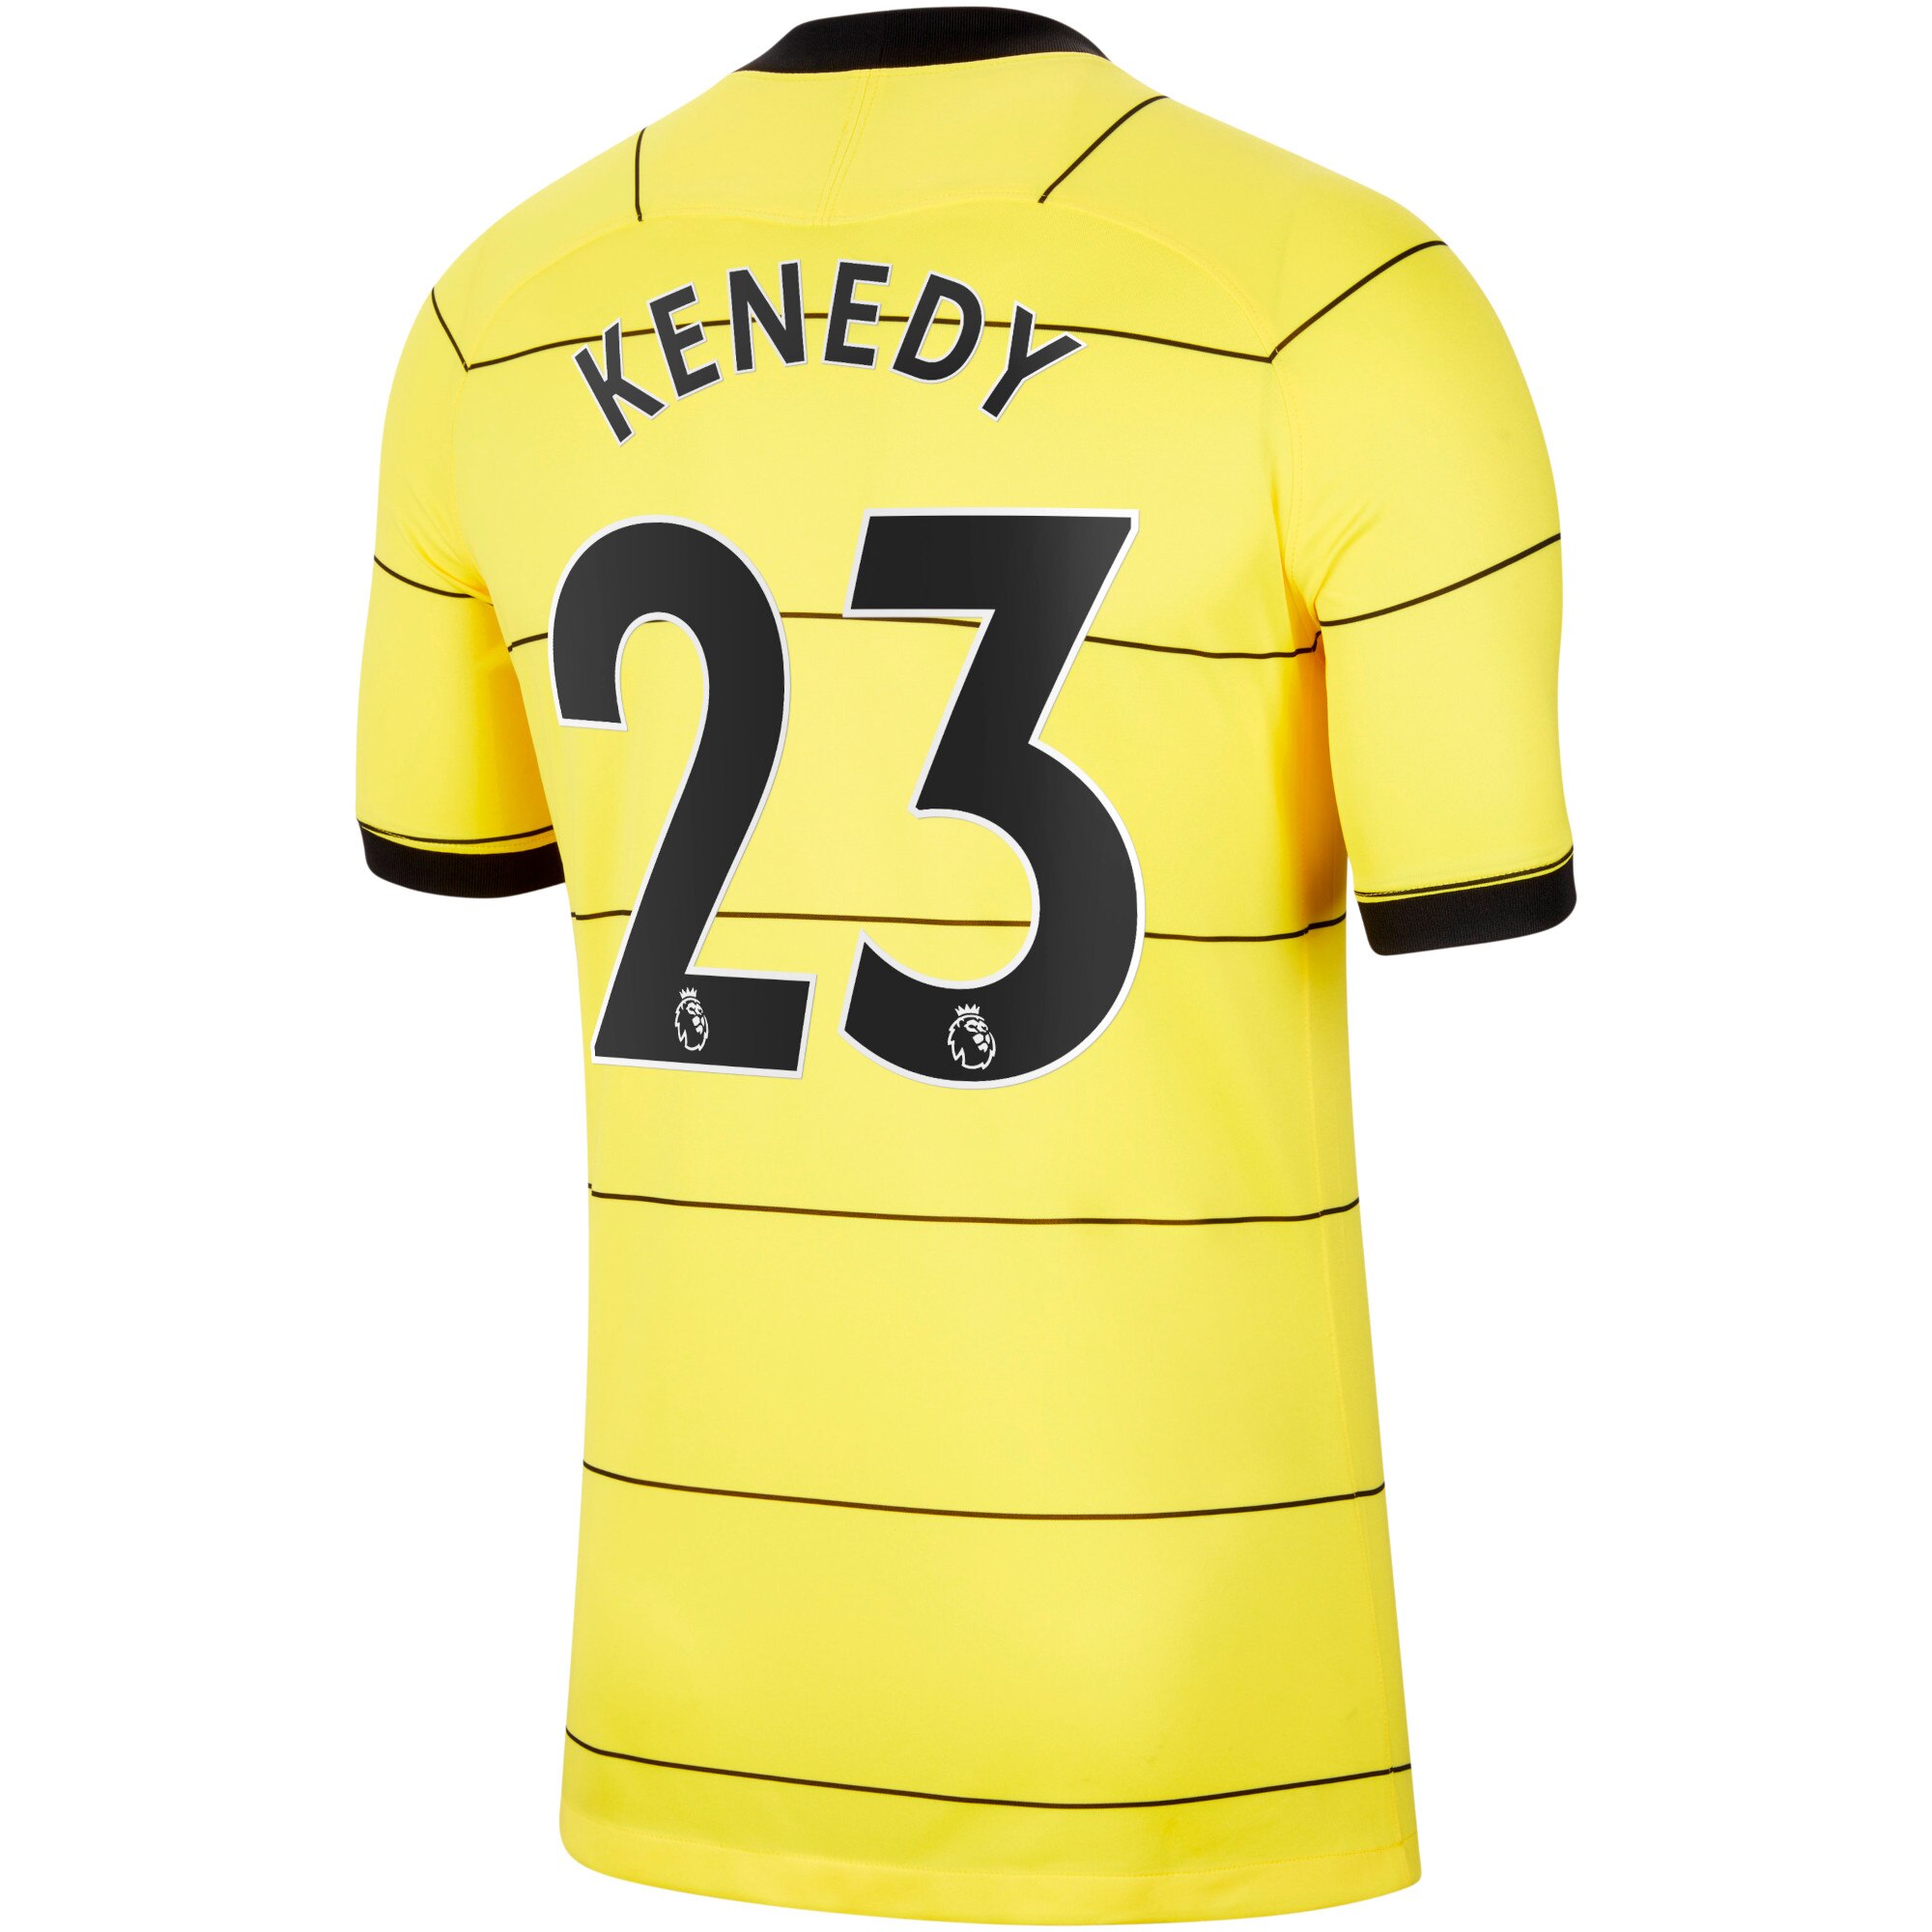 Chelsea Away Stadium Shirt 2021-22 with Kenedy 23 printing